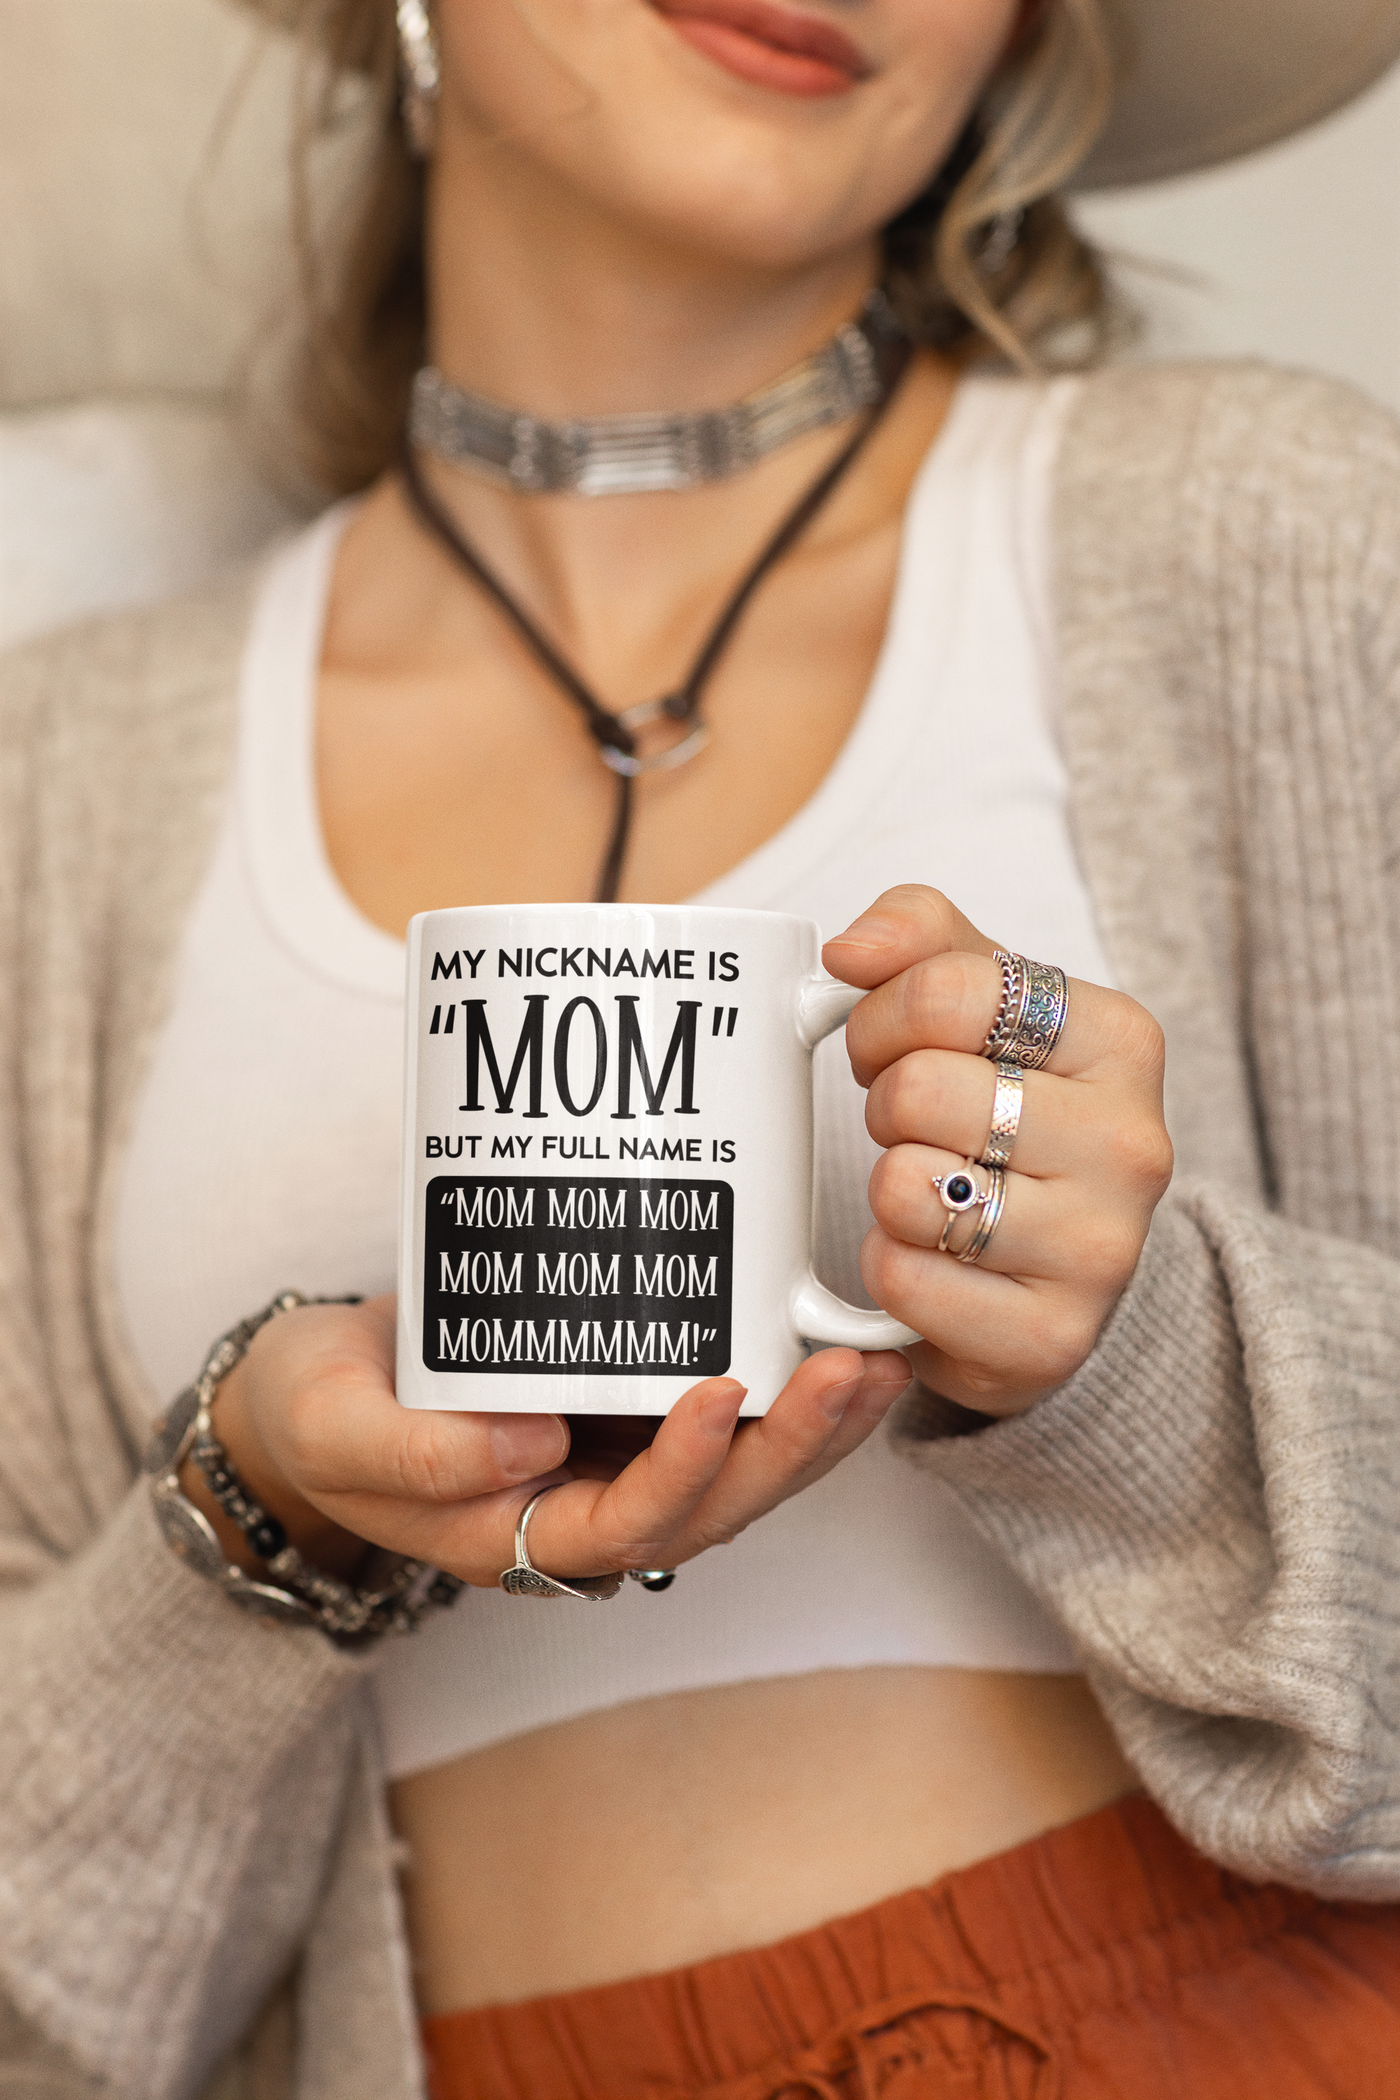 My Nickname Is Mom But My Full Name Is "MOM MOM MOM............MOMMMMMM!"